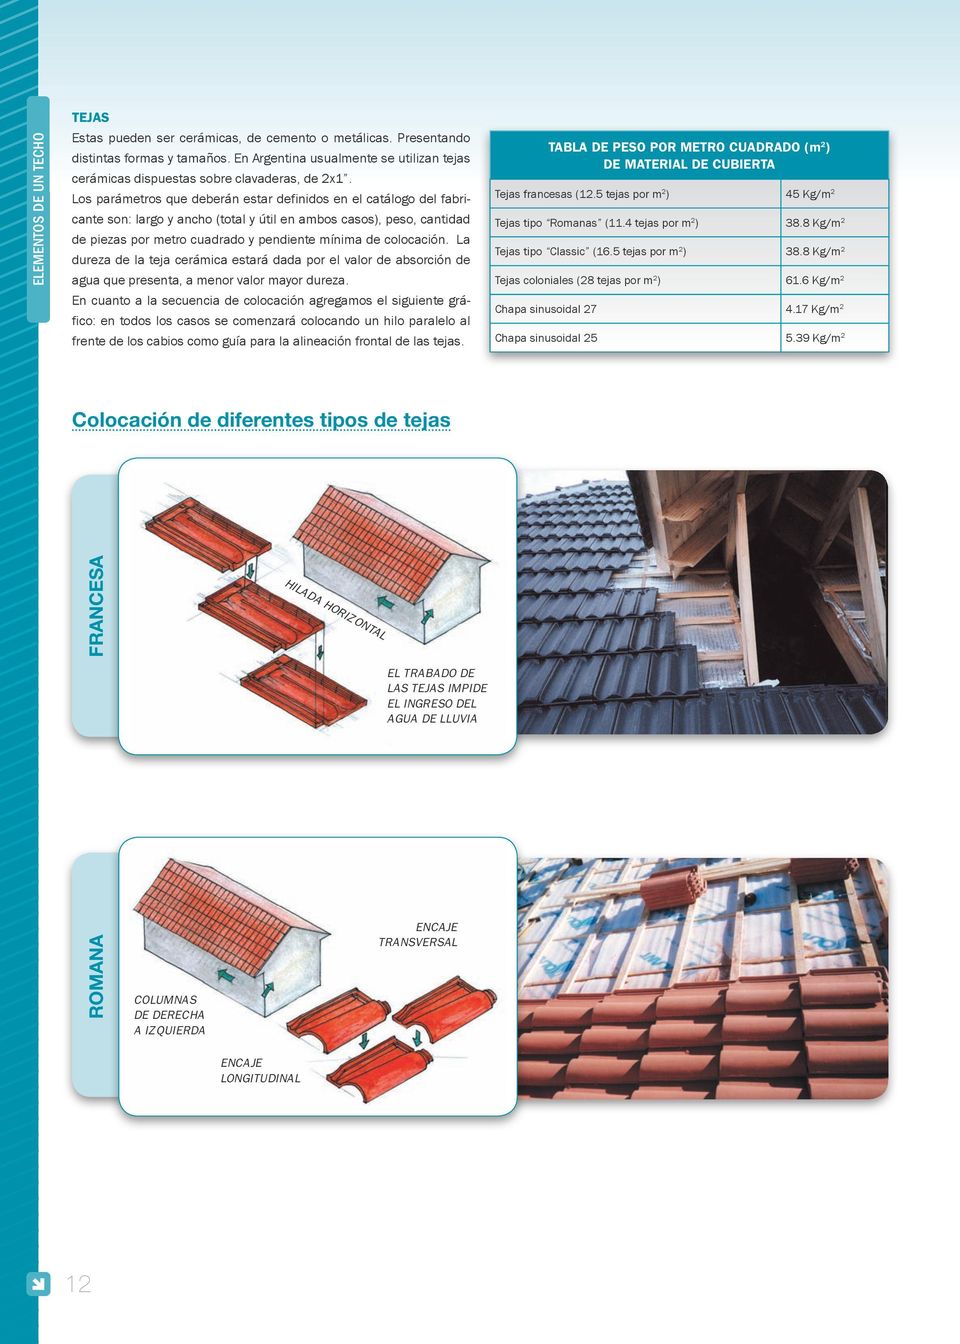 La dureza de la teja cerámica estará dada por el valor de absorción de agua que presenta, a menor valor mayor dureza.